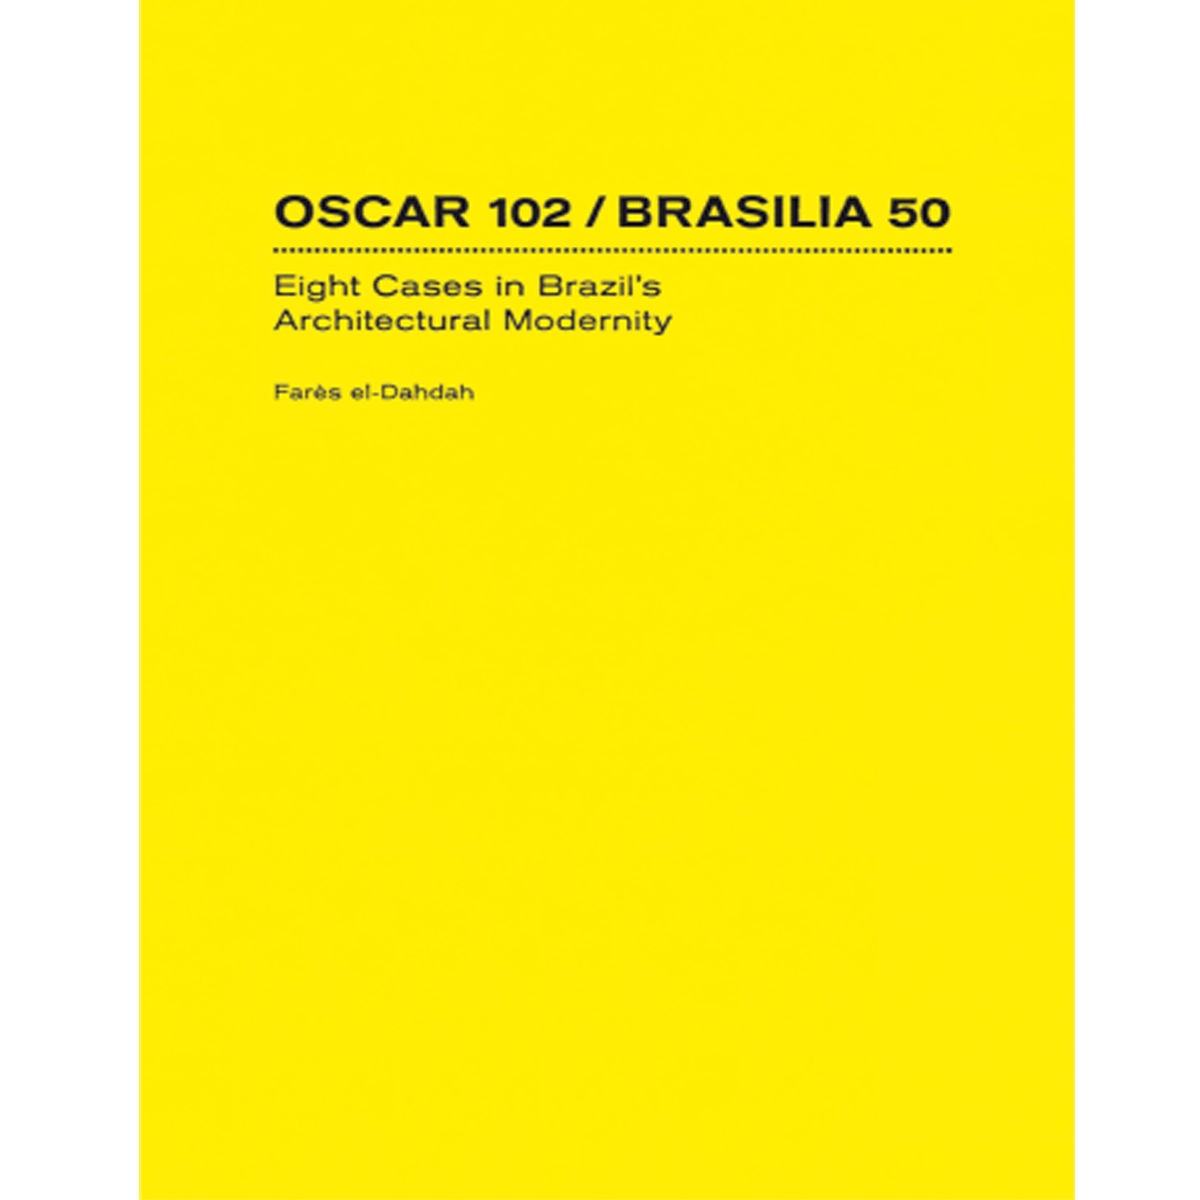 Oscar 102 / Brasilia 50